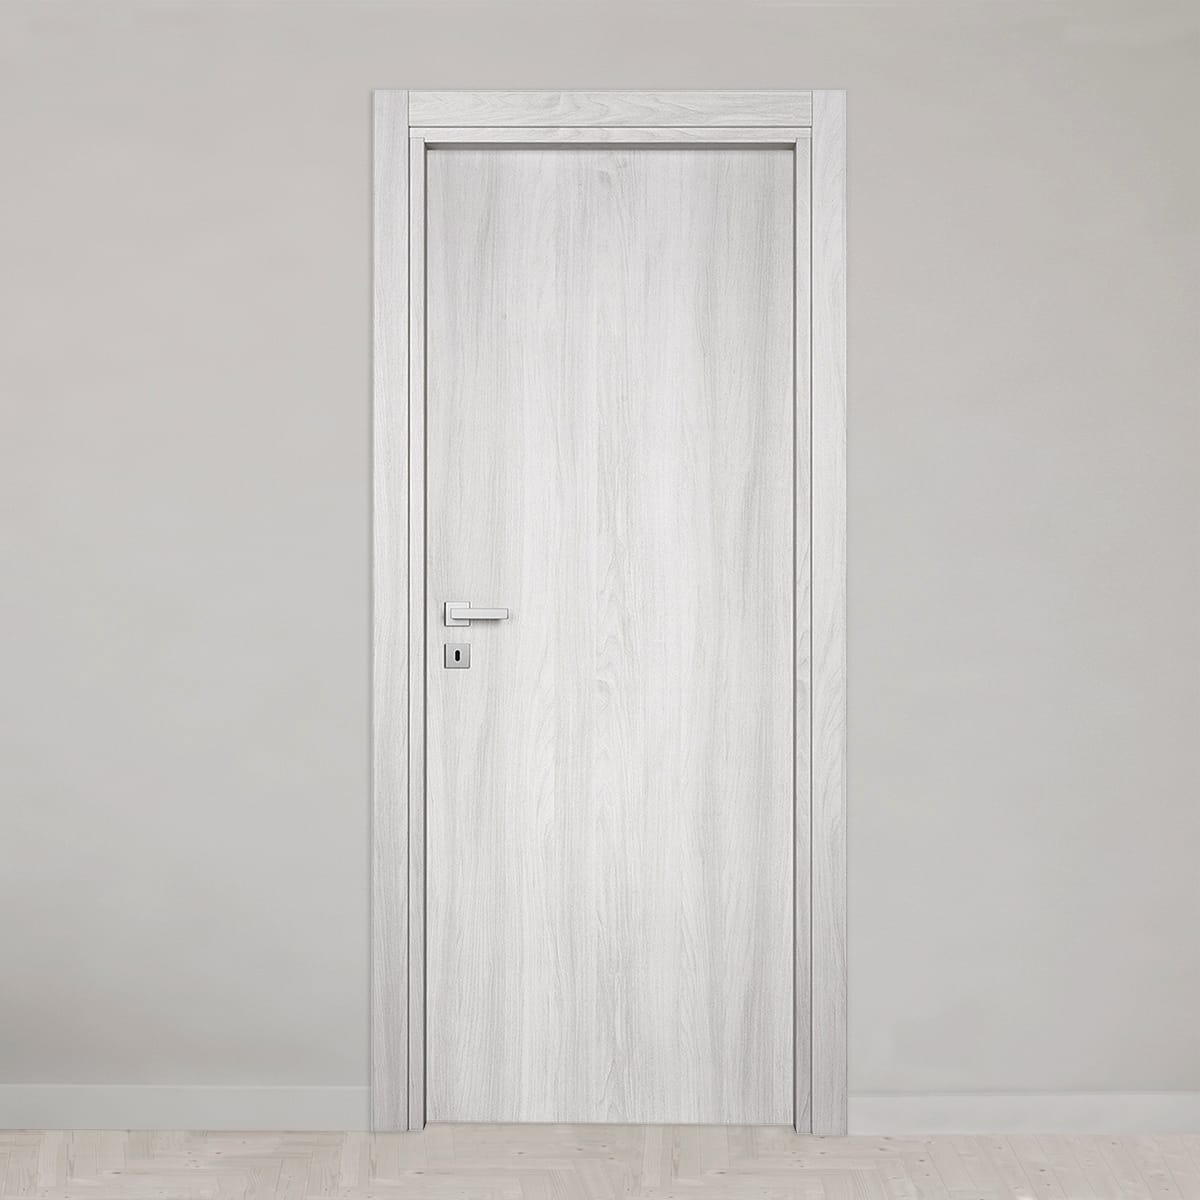 MARBEN DOOR 70X210 REVERSIBLE WHITE ELM